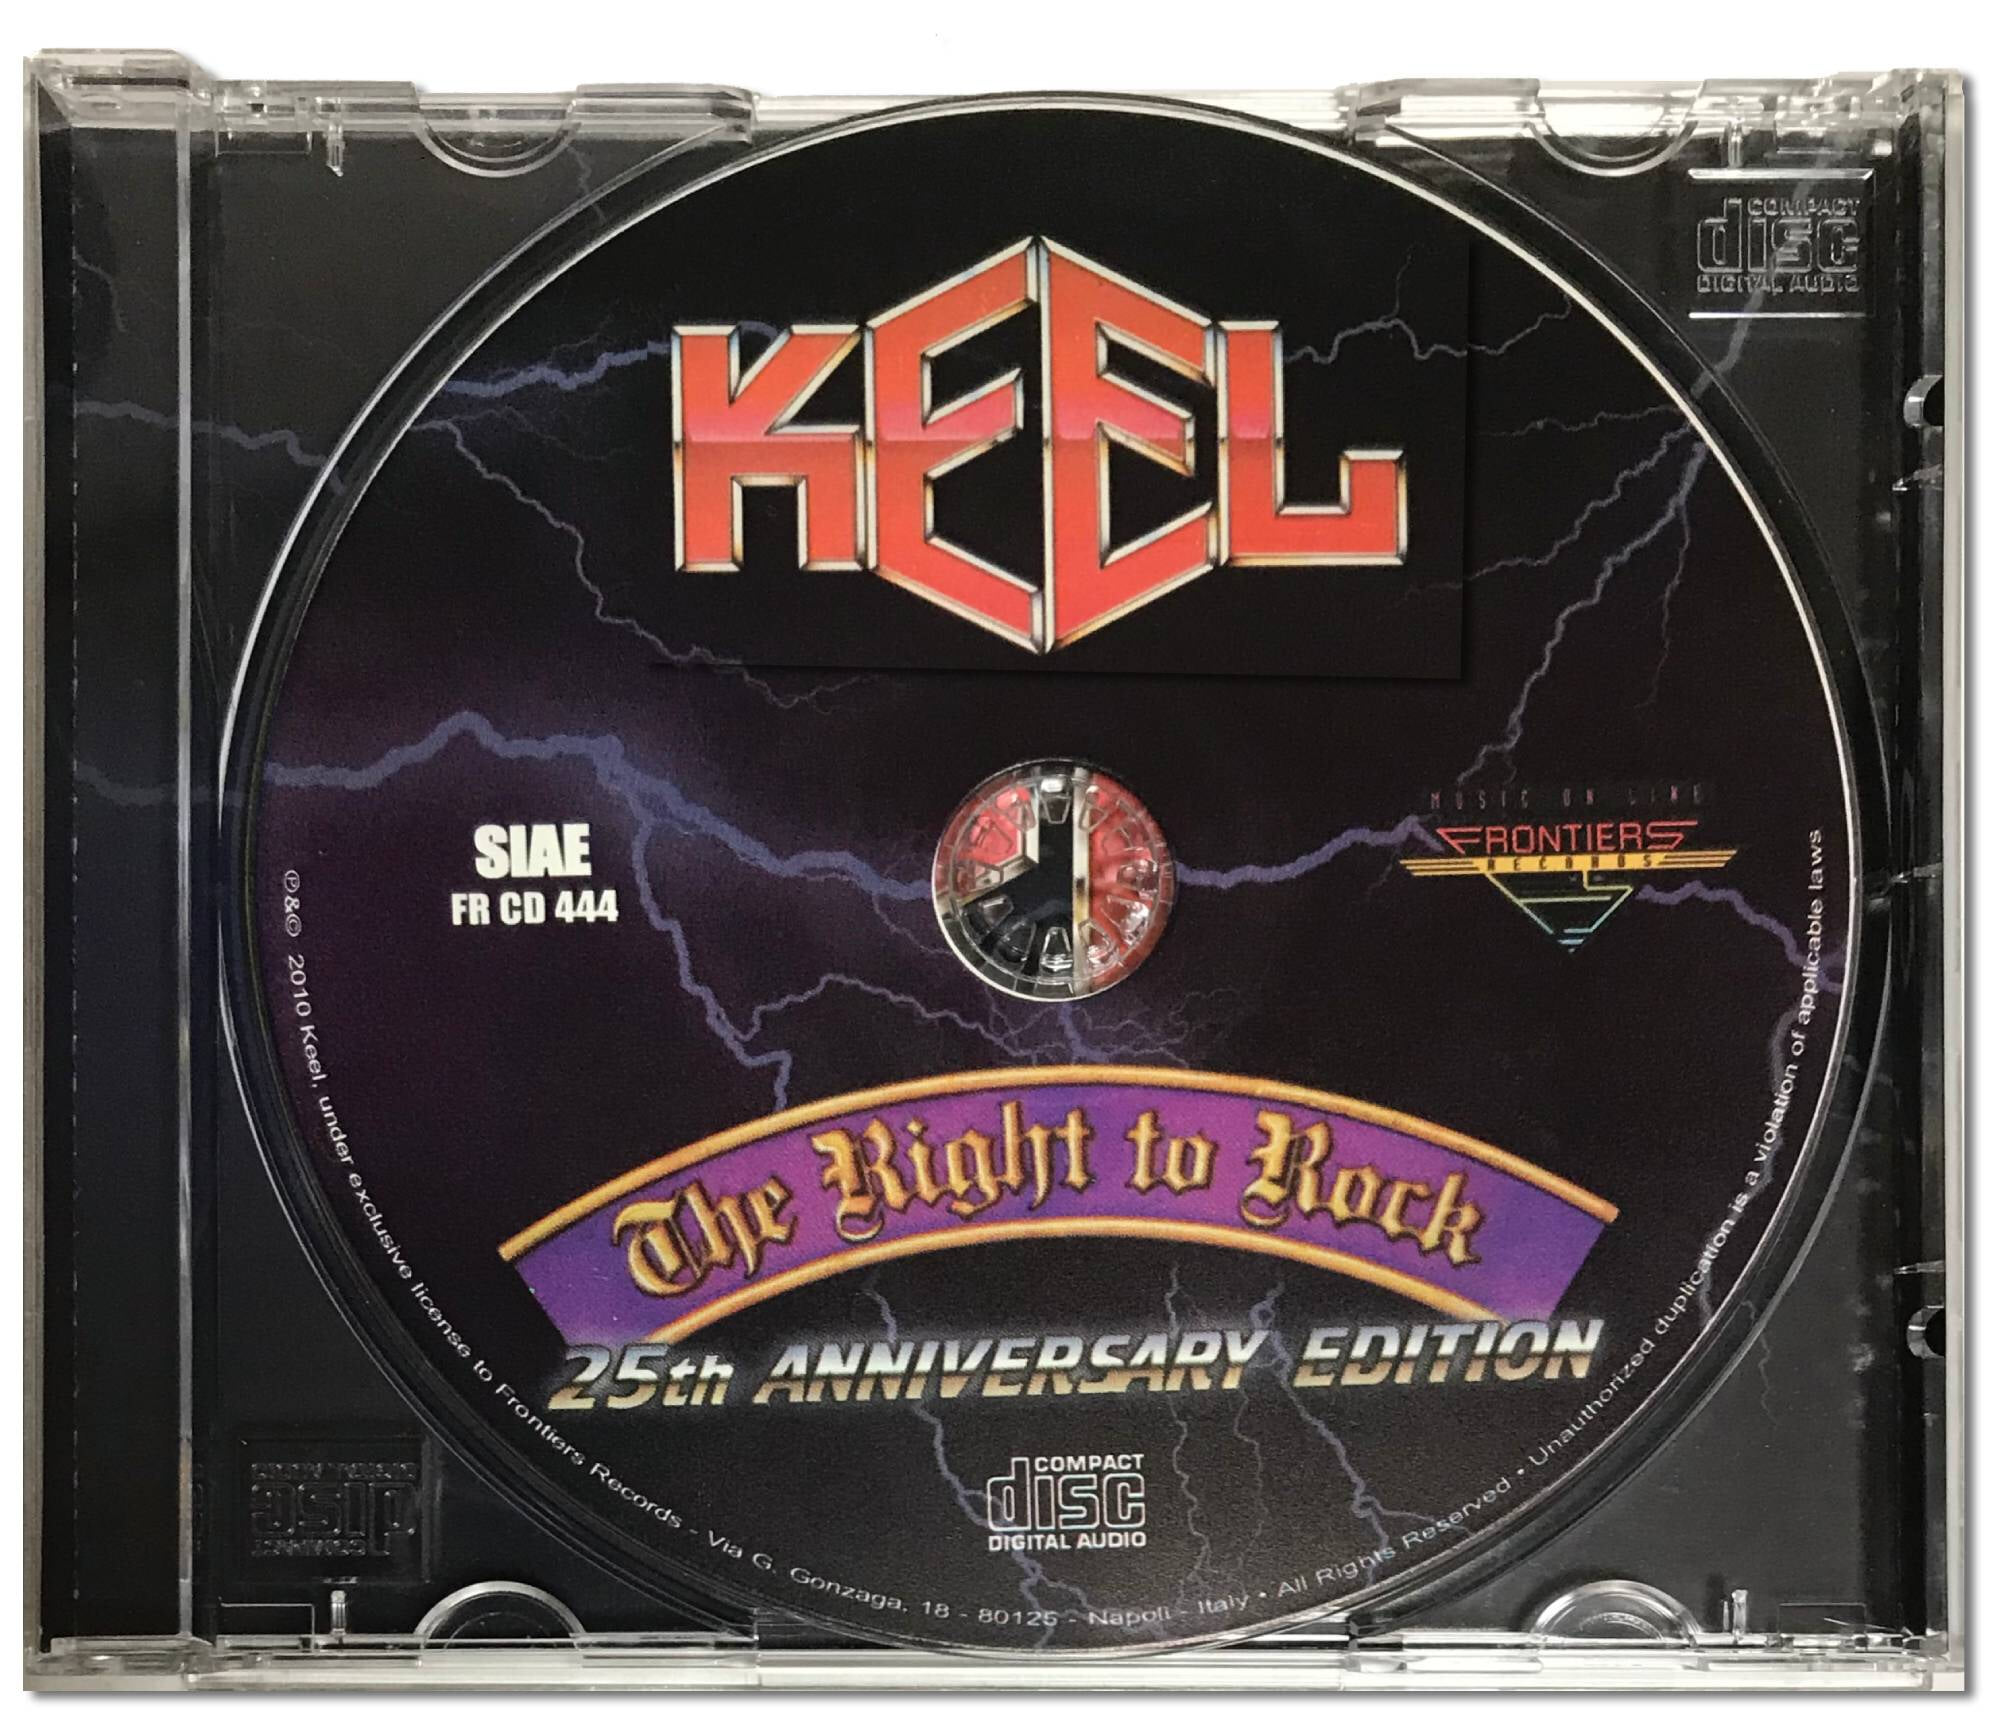 [유럽반CD] Keel -The Right To Rock 25th Anniversary Edition 2 Bonus